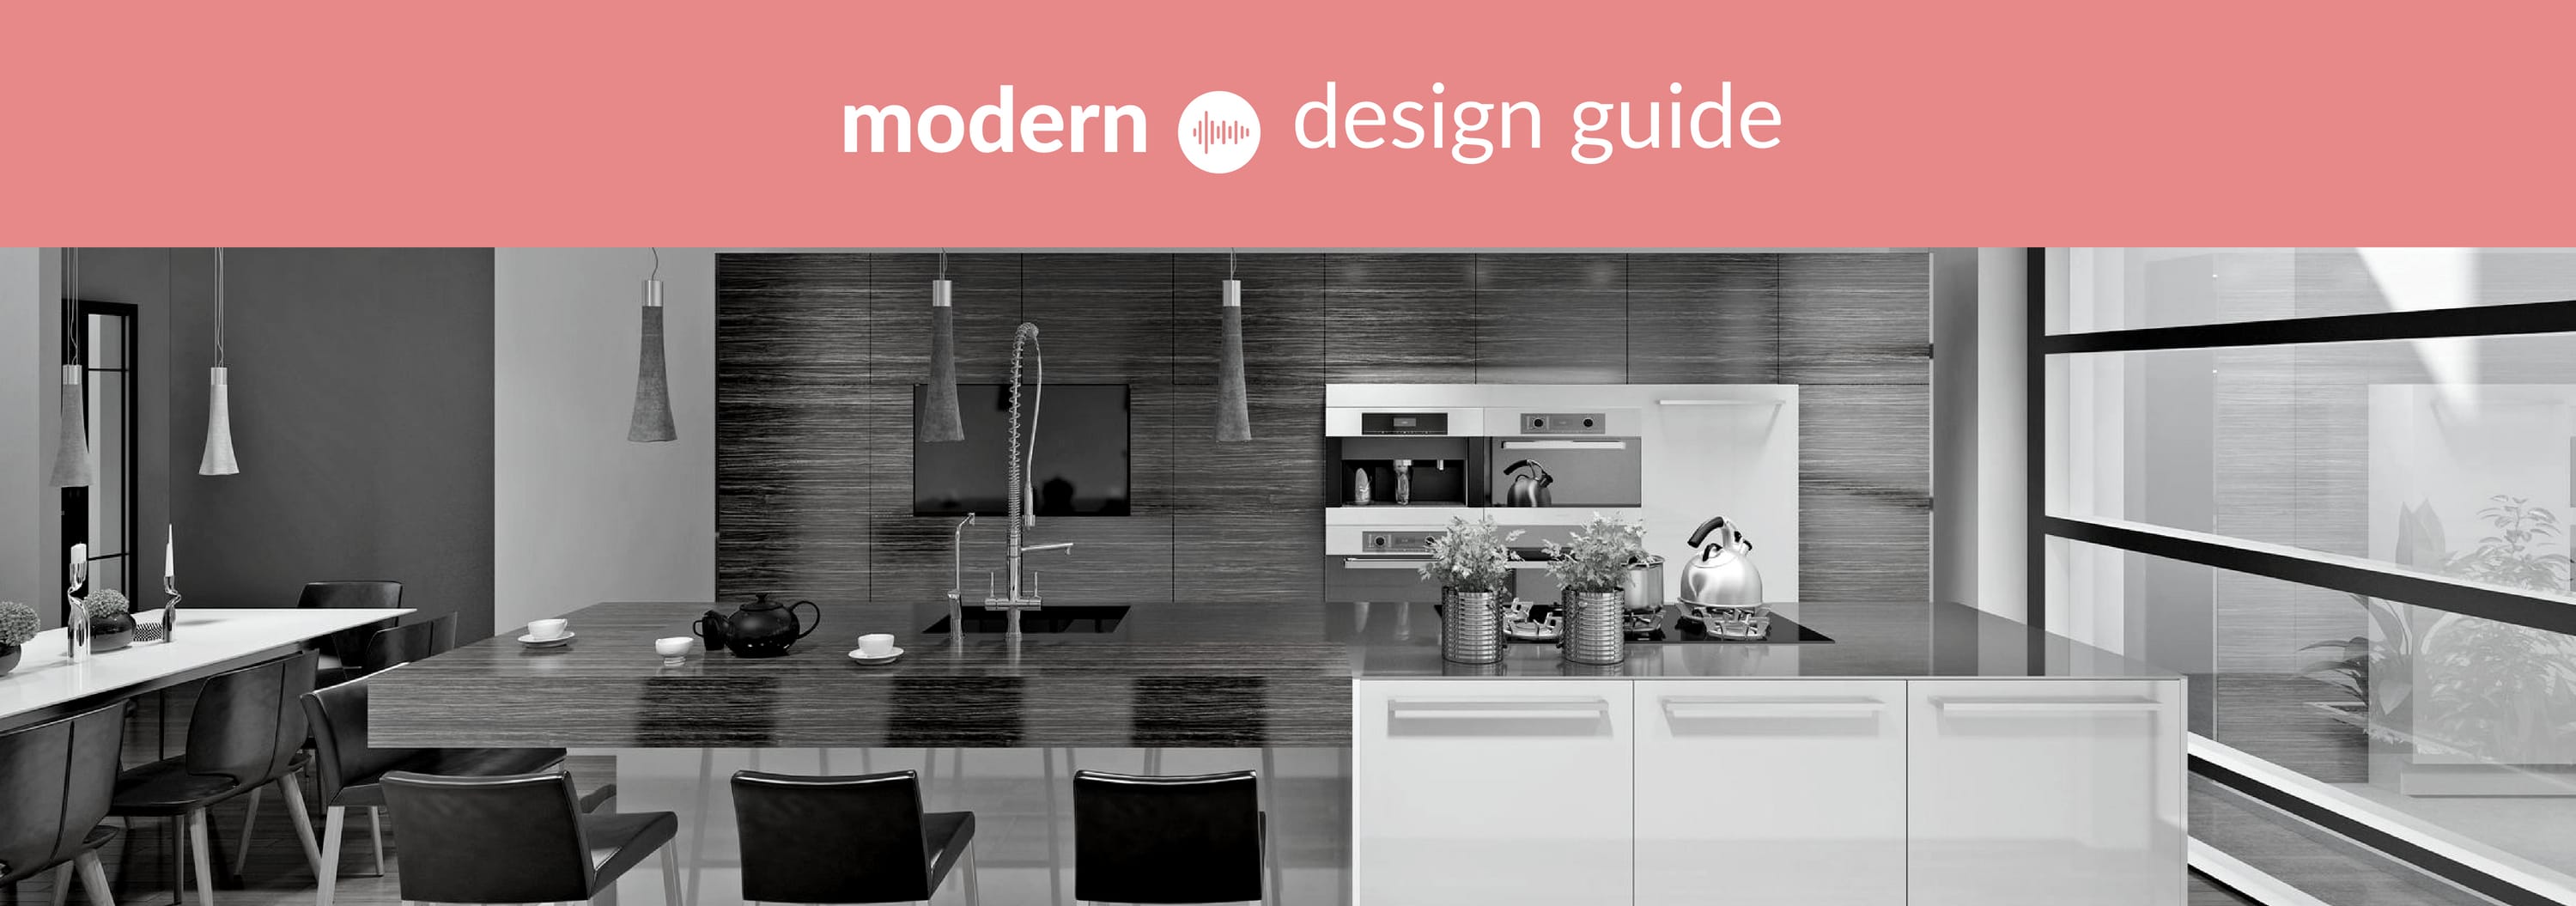 https://www.huntskitchendesigns.com/wp-content/uploads/2018/07/modern-kitchen-design-idea.jpg